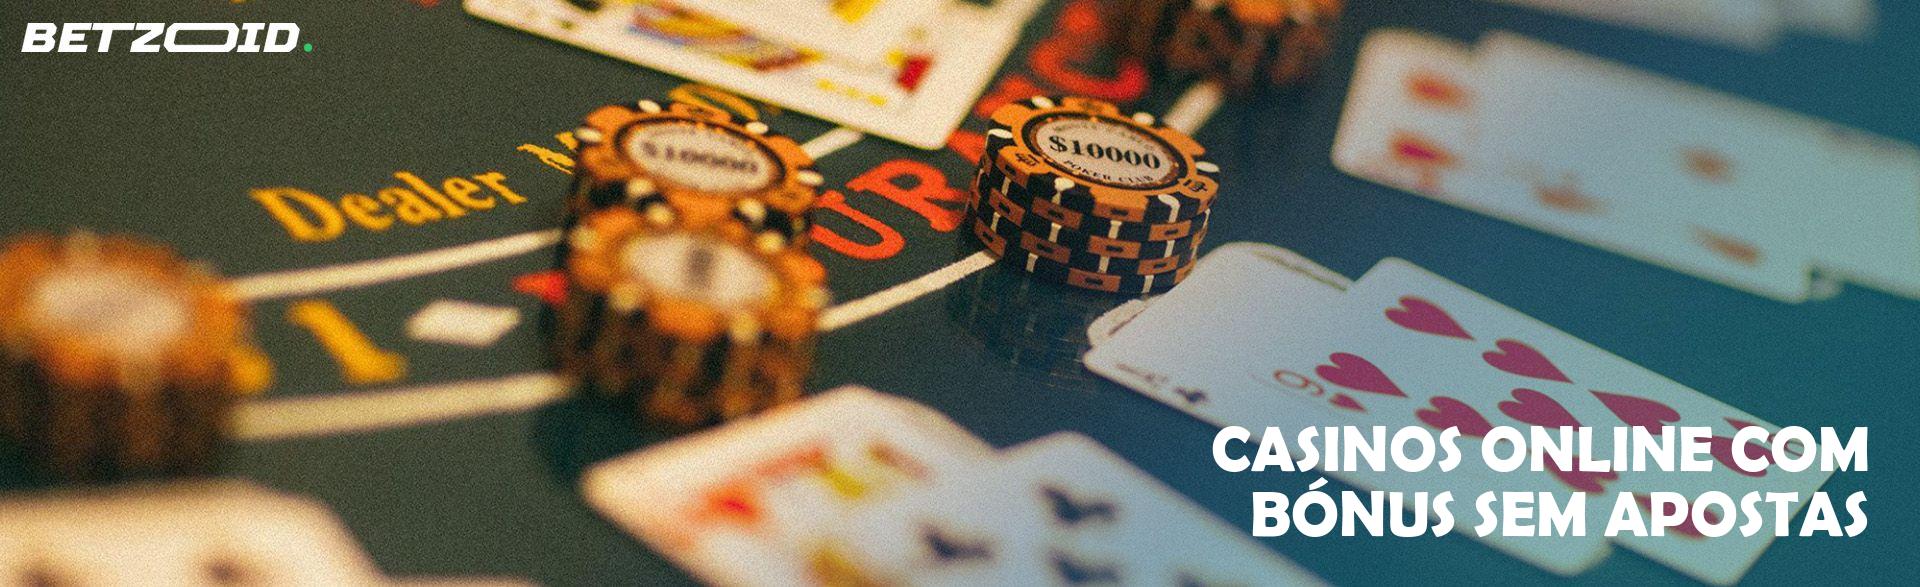 Casinos Online com Bónus Sem Apostas.